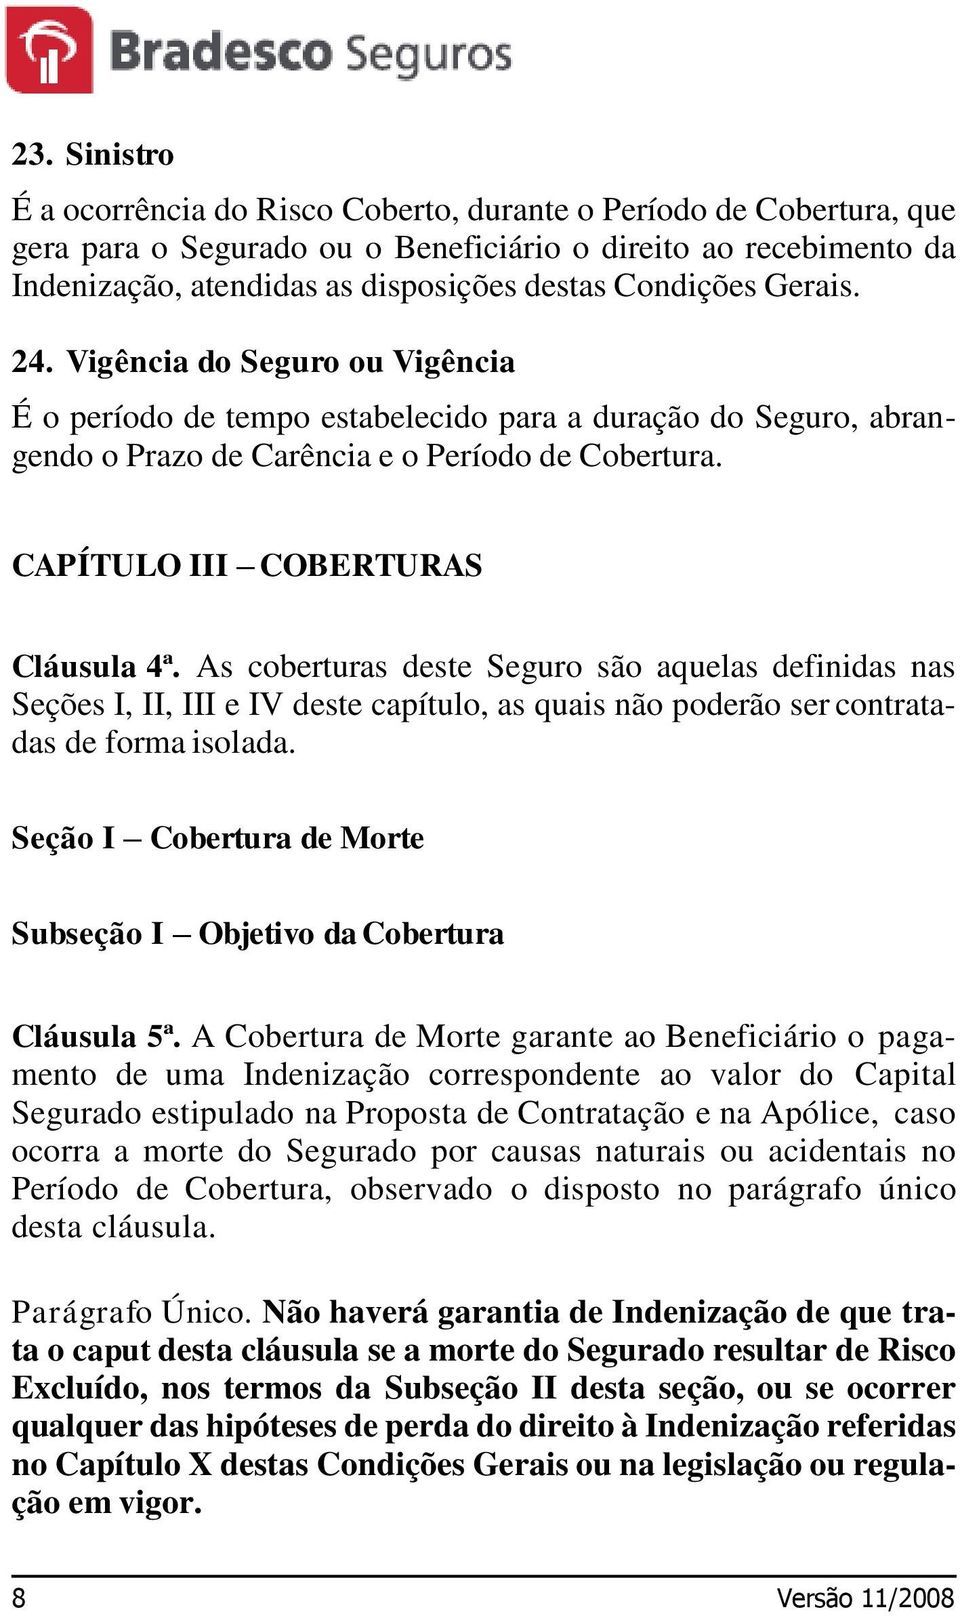 CAPÍTULO III COBERTURAS Cláusula 4ª. As coberturas deste Seguro são aquelas definidas nas Seções I, II, III e IV deste capítulo, as quais não poderão ser contratadas de forma isolada.